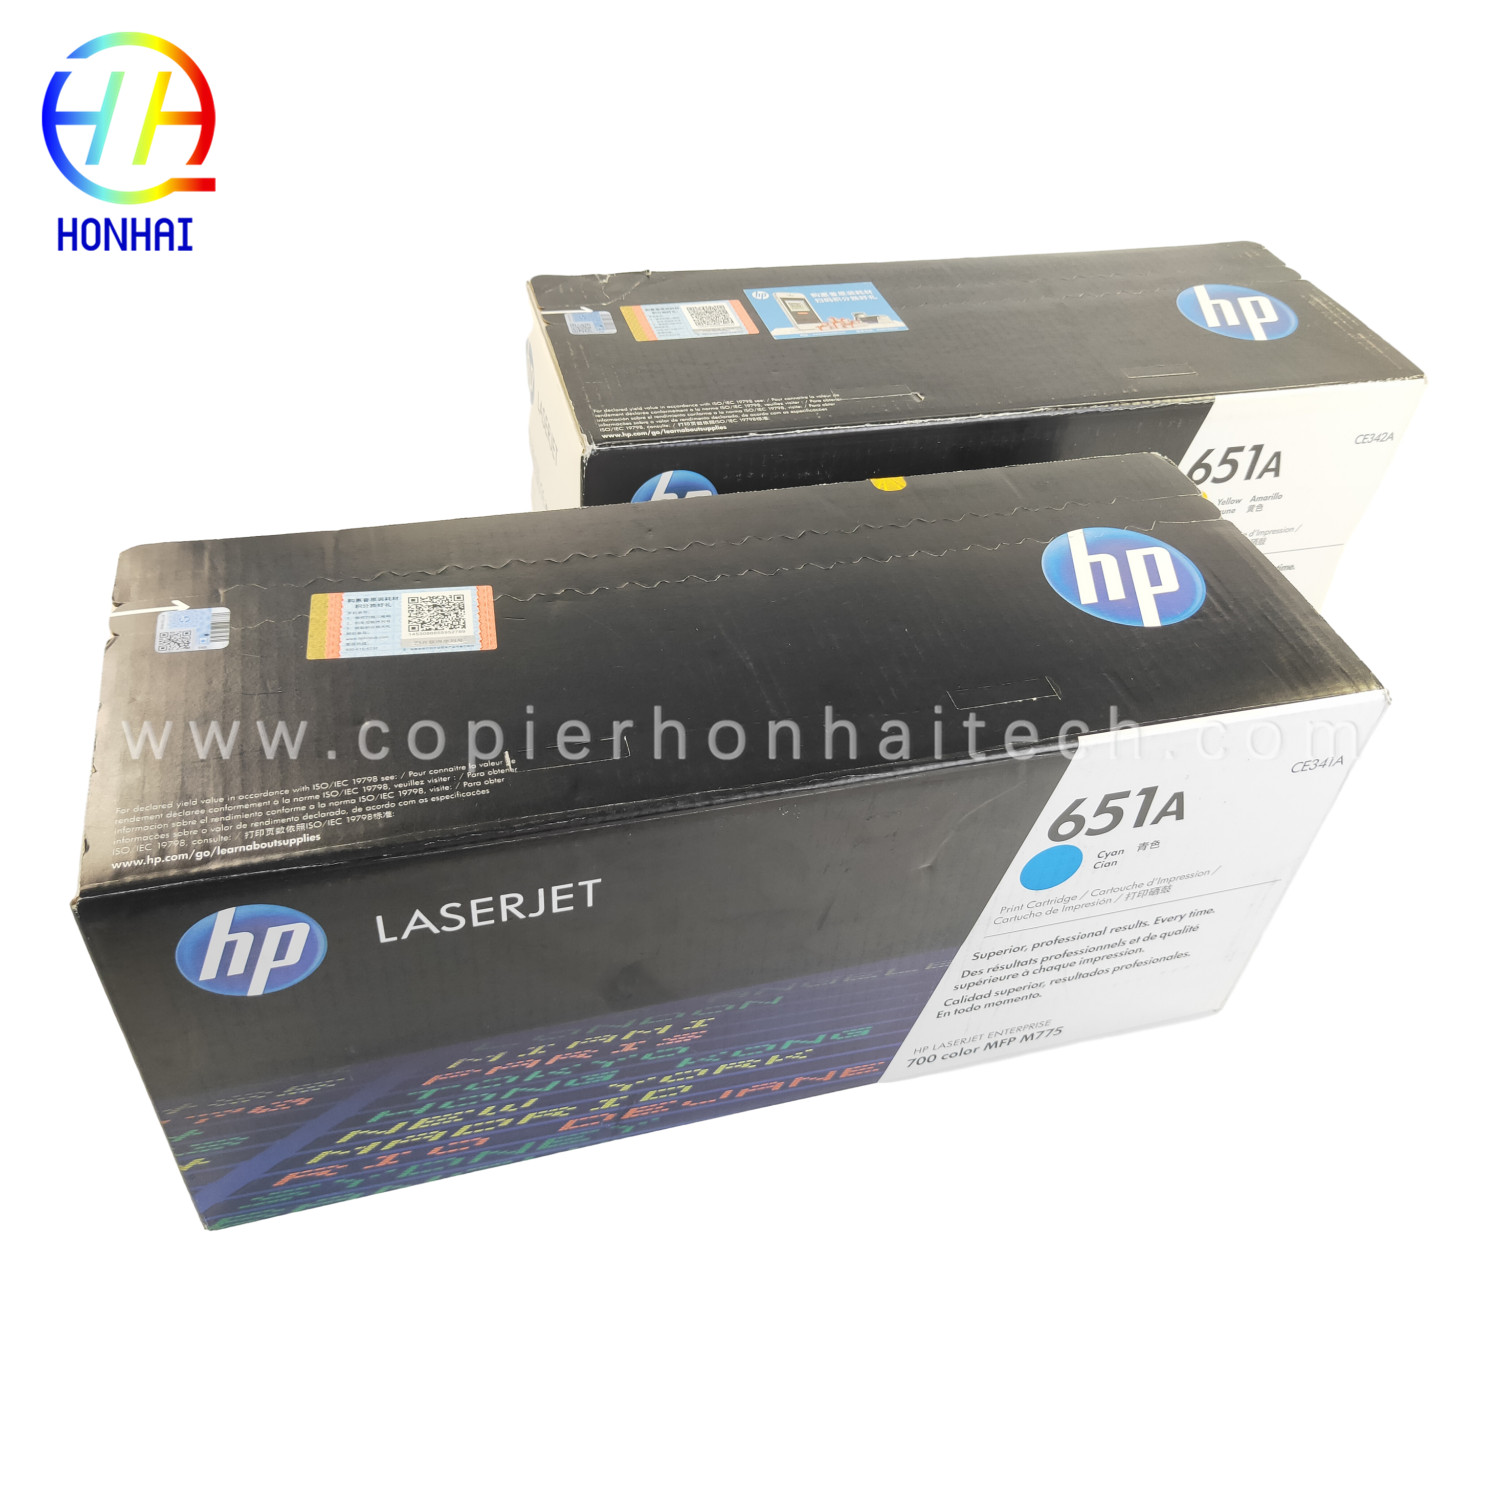 https://www.copierhonhaitech.com/original-toner-cartridge-for-hp-laserjet-enterprise-700-color-mfp-m775-series-651a-ce341a-cyan-ce342ac-amarillo-16000-page-product/